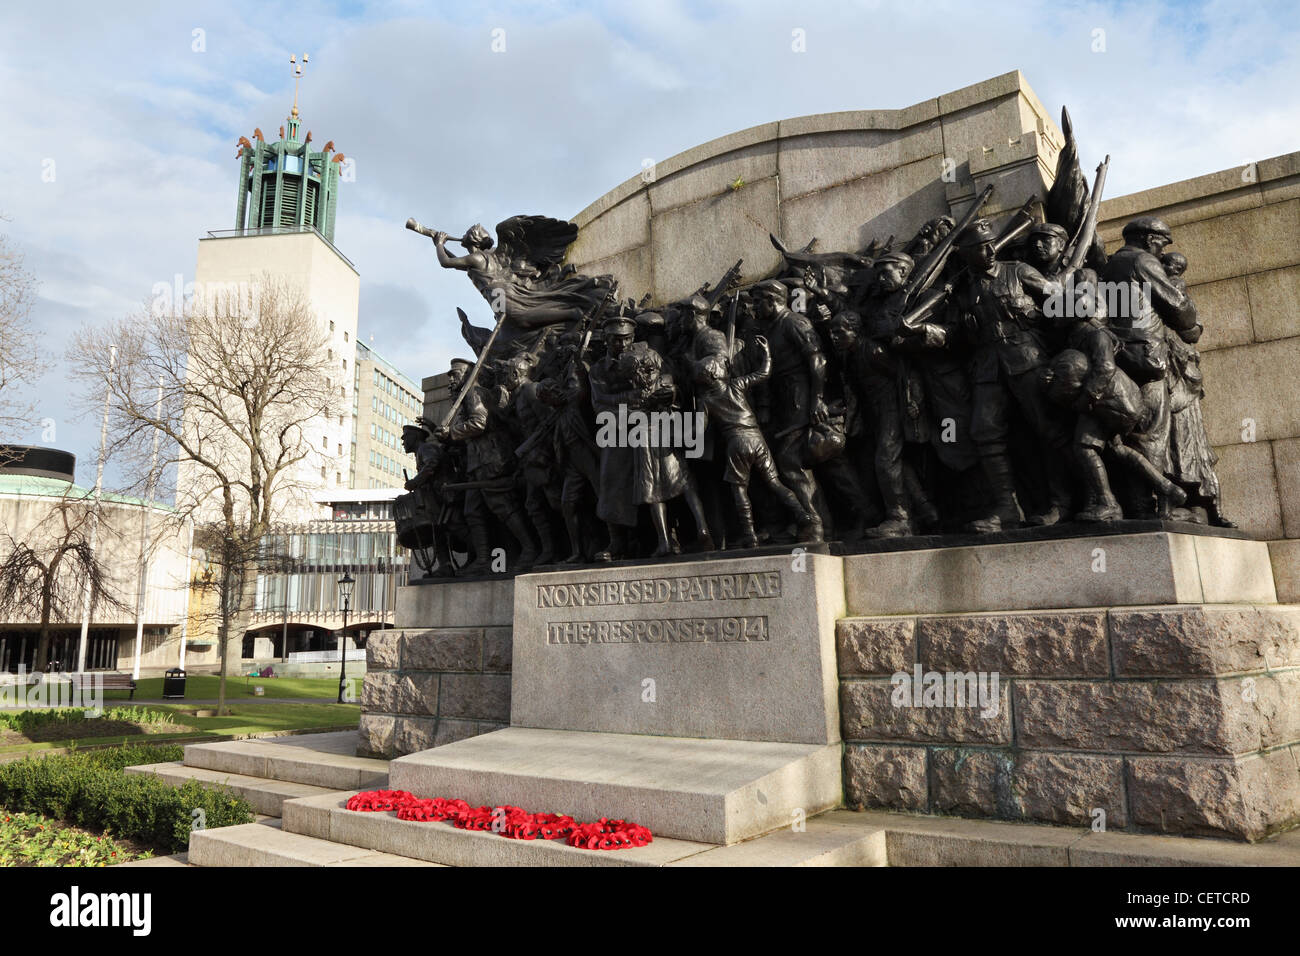 Mémorial de la première guerre mondiale la réponse, Newcastle upon Tyne Angleterre Royaume-Uni Banque D'Images